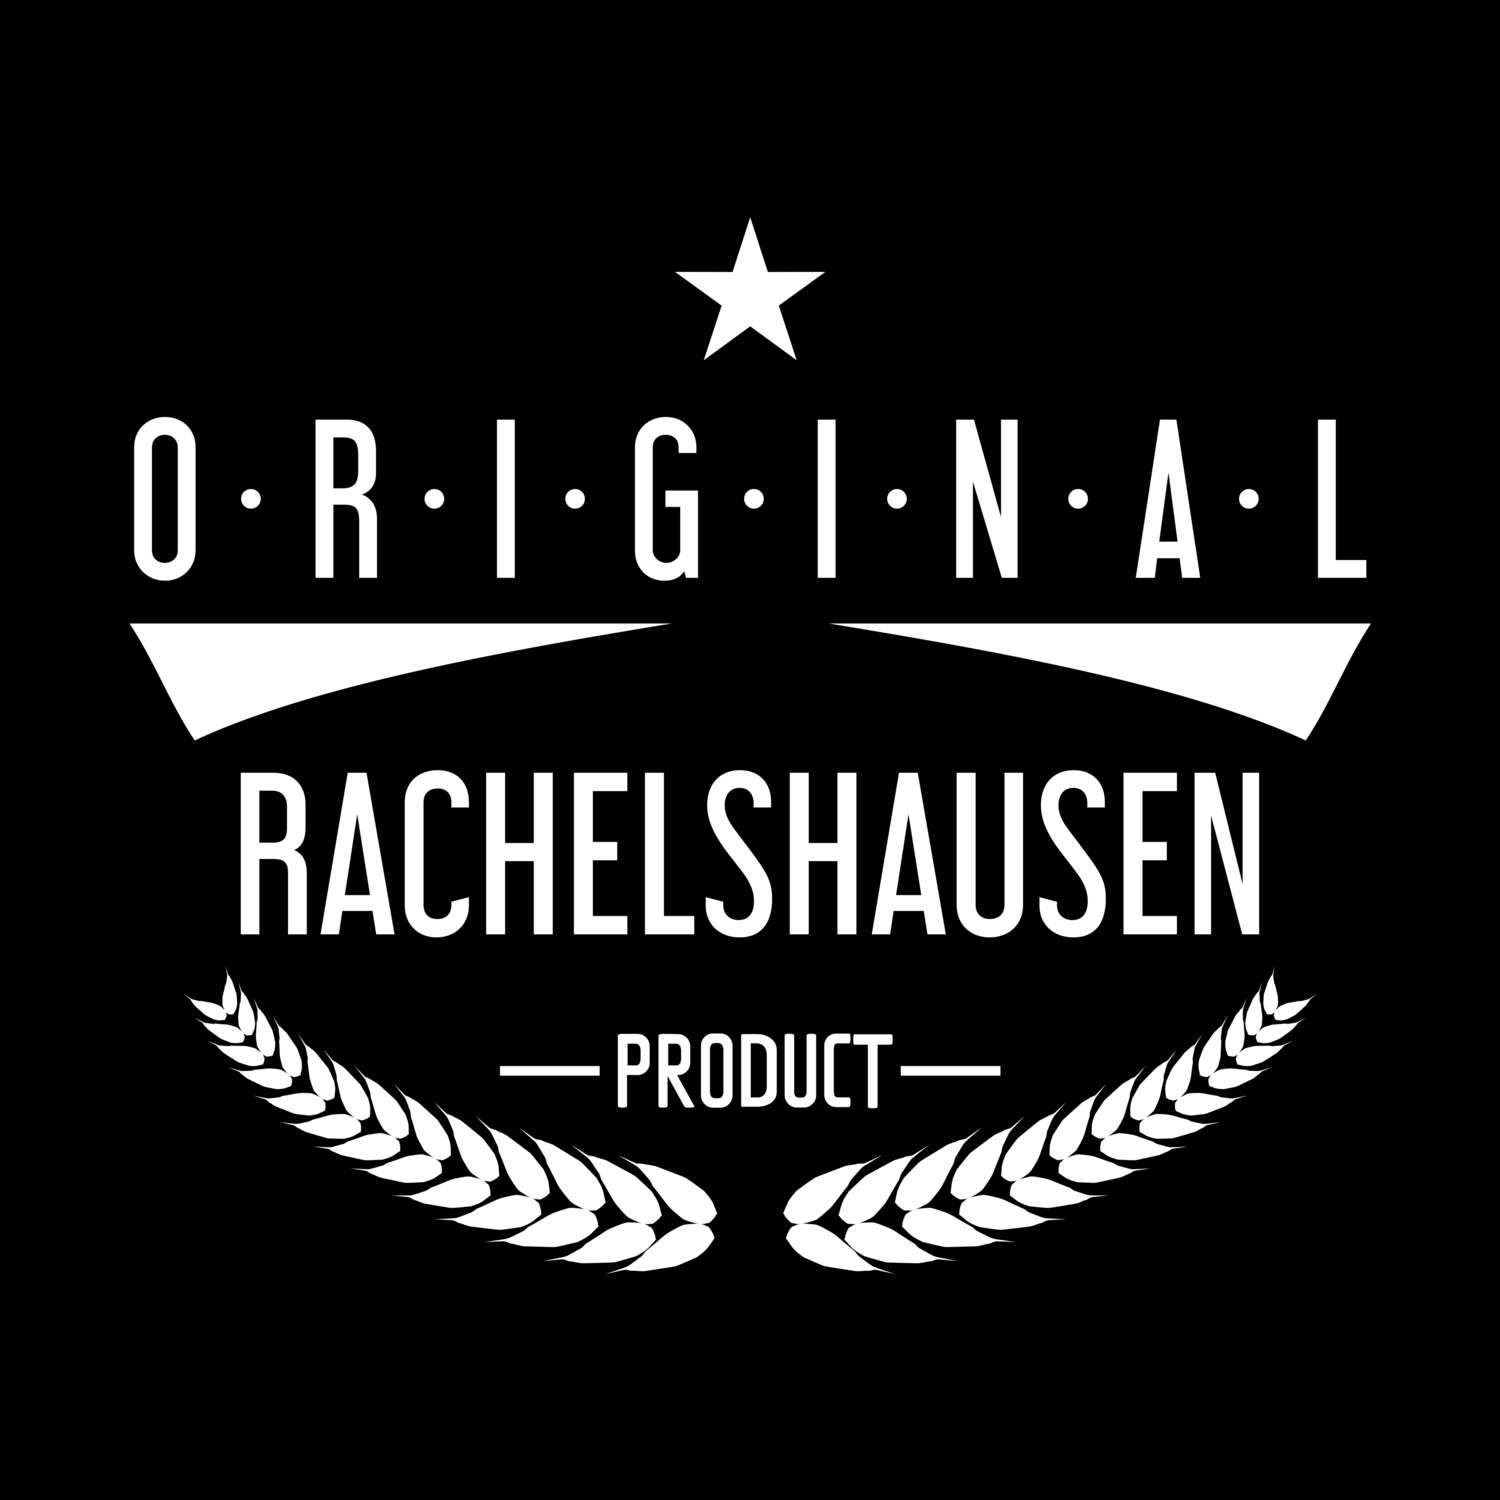 Rachelshausen T-Shirt »Original Product«